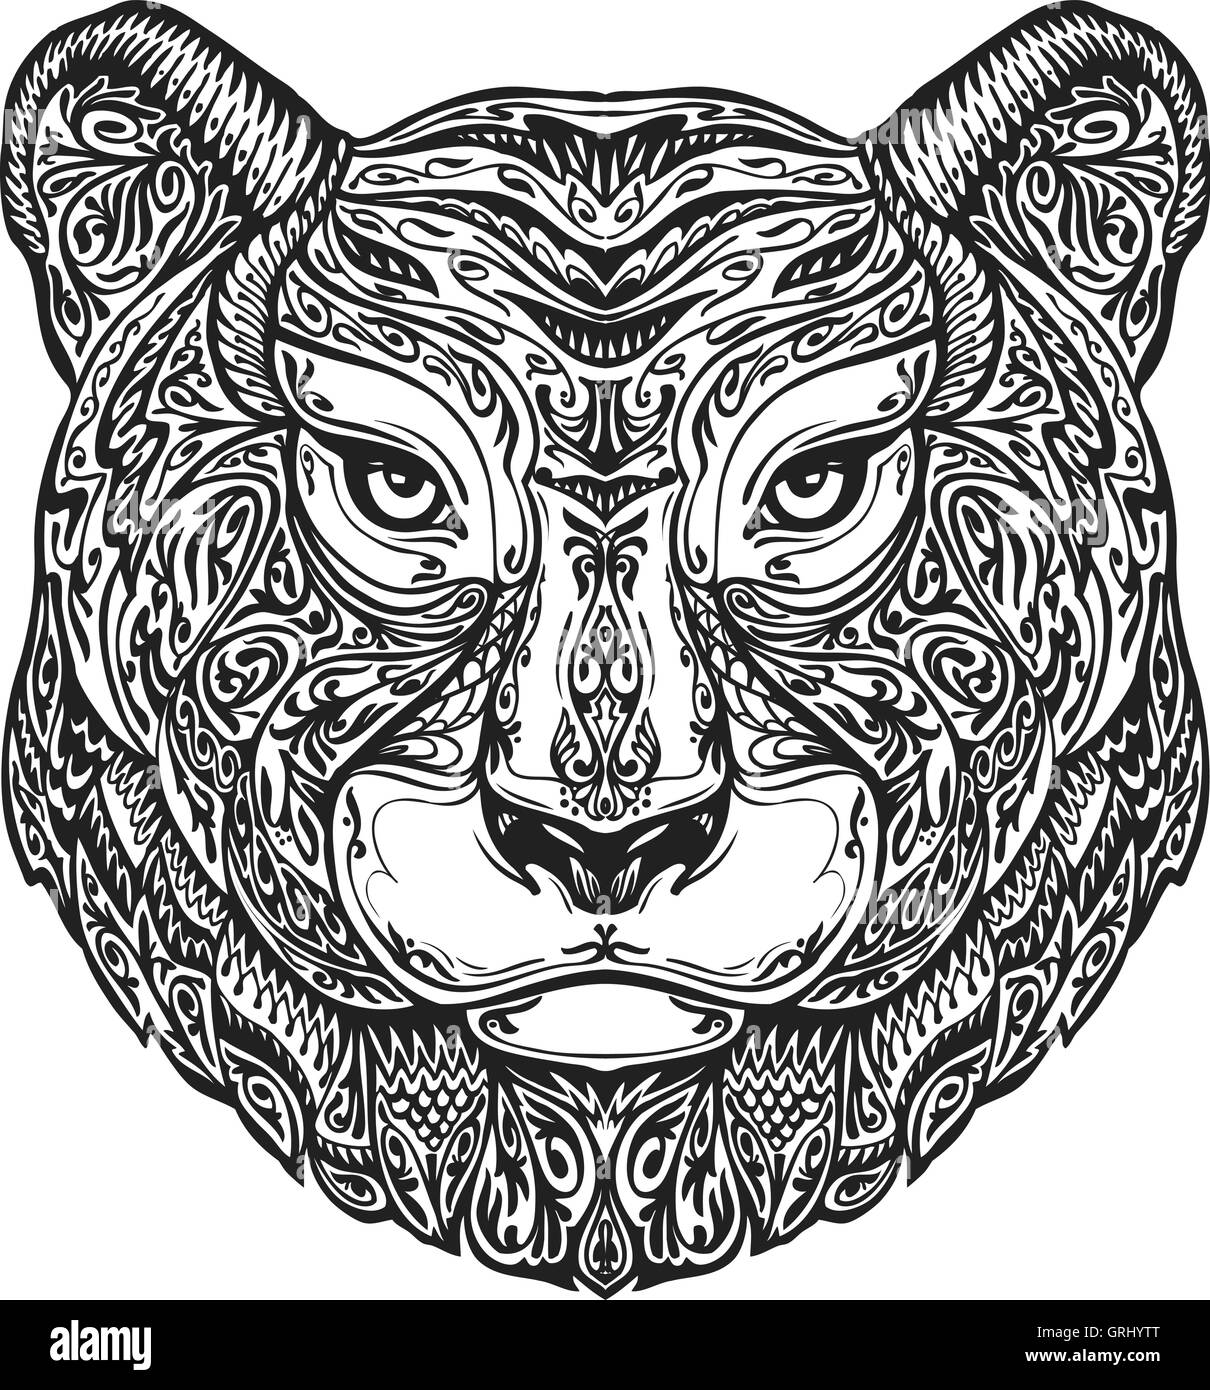 Ornementés ethniques tigre, puma, panthère, léopard ou jaguar. Hand drawn vector illustration avec éléments floraux Illustration de Vecteur